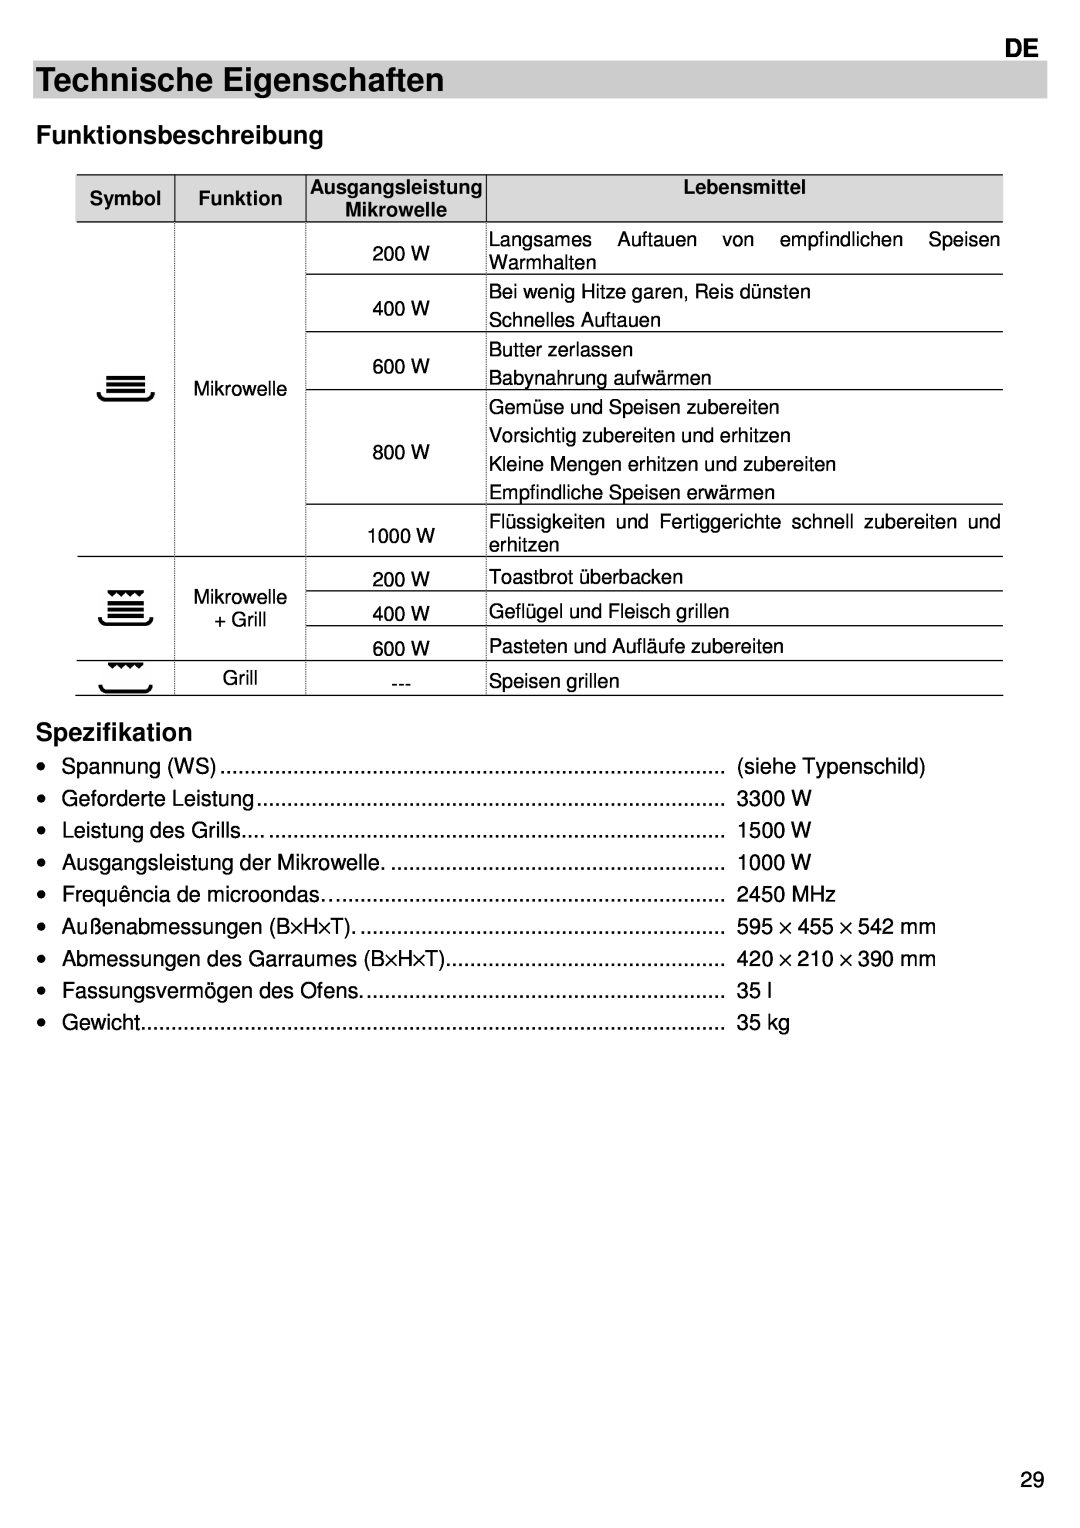 Candy MIC 305 X user manual Technische Eigenschaften, Funktionsbeschreibung, Spezifikation 